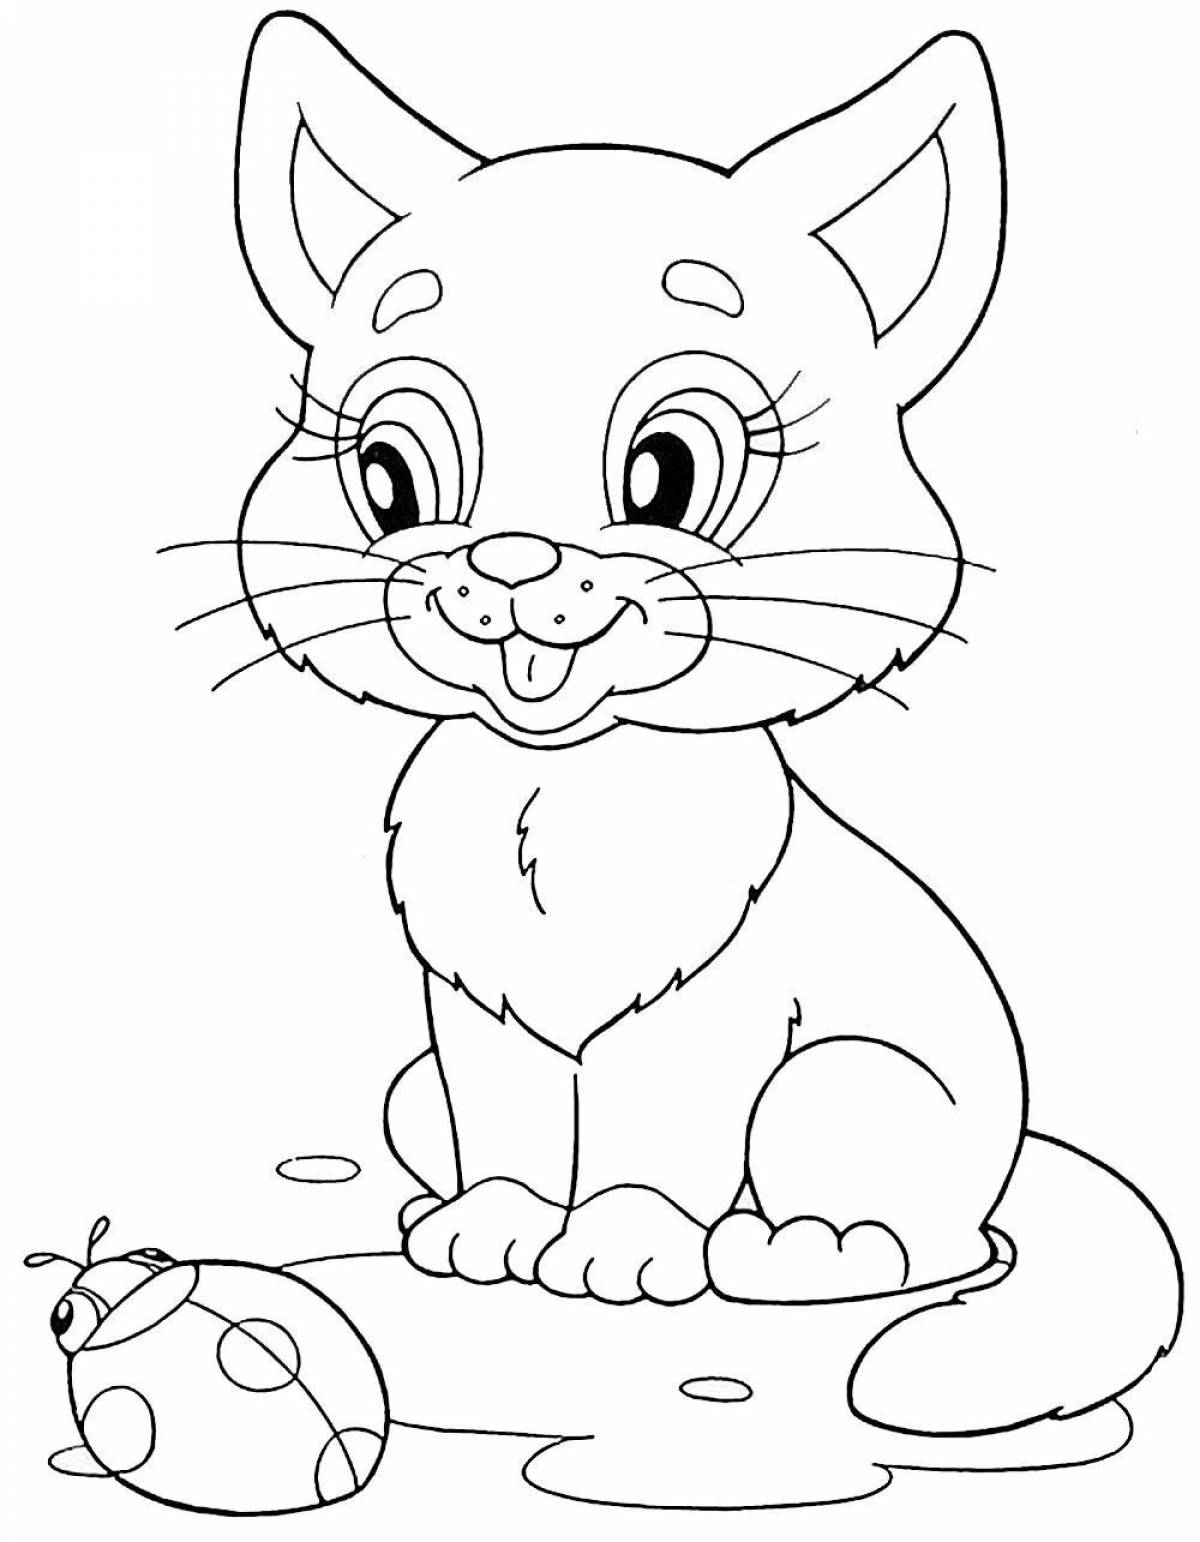 Интересная раскраска кошка для детей 5-6 лет